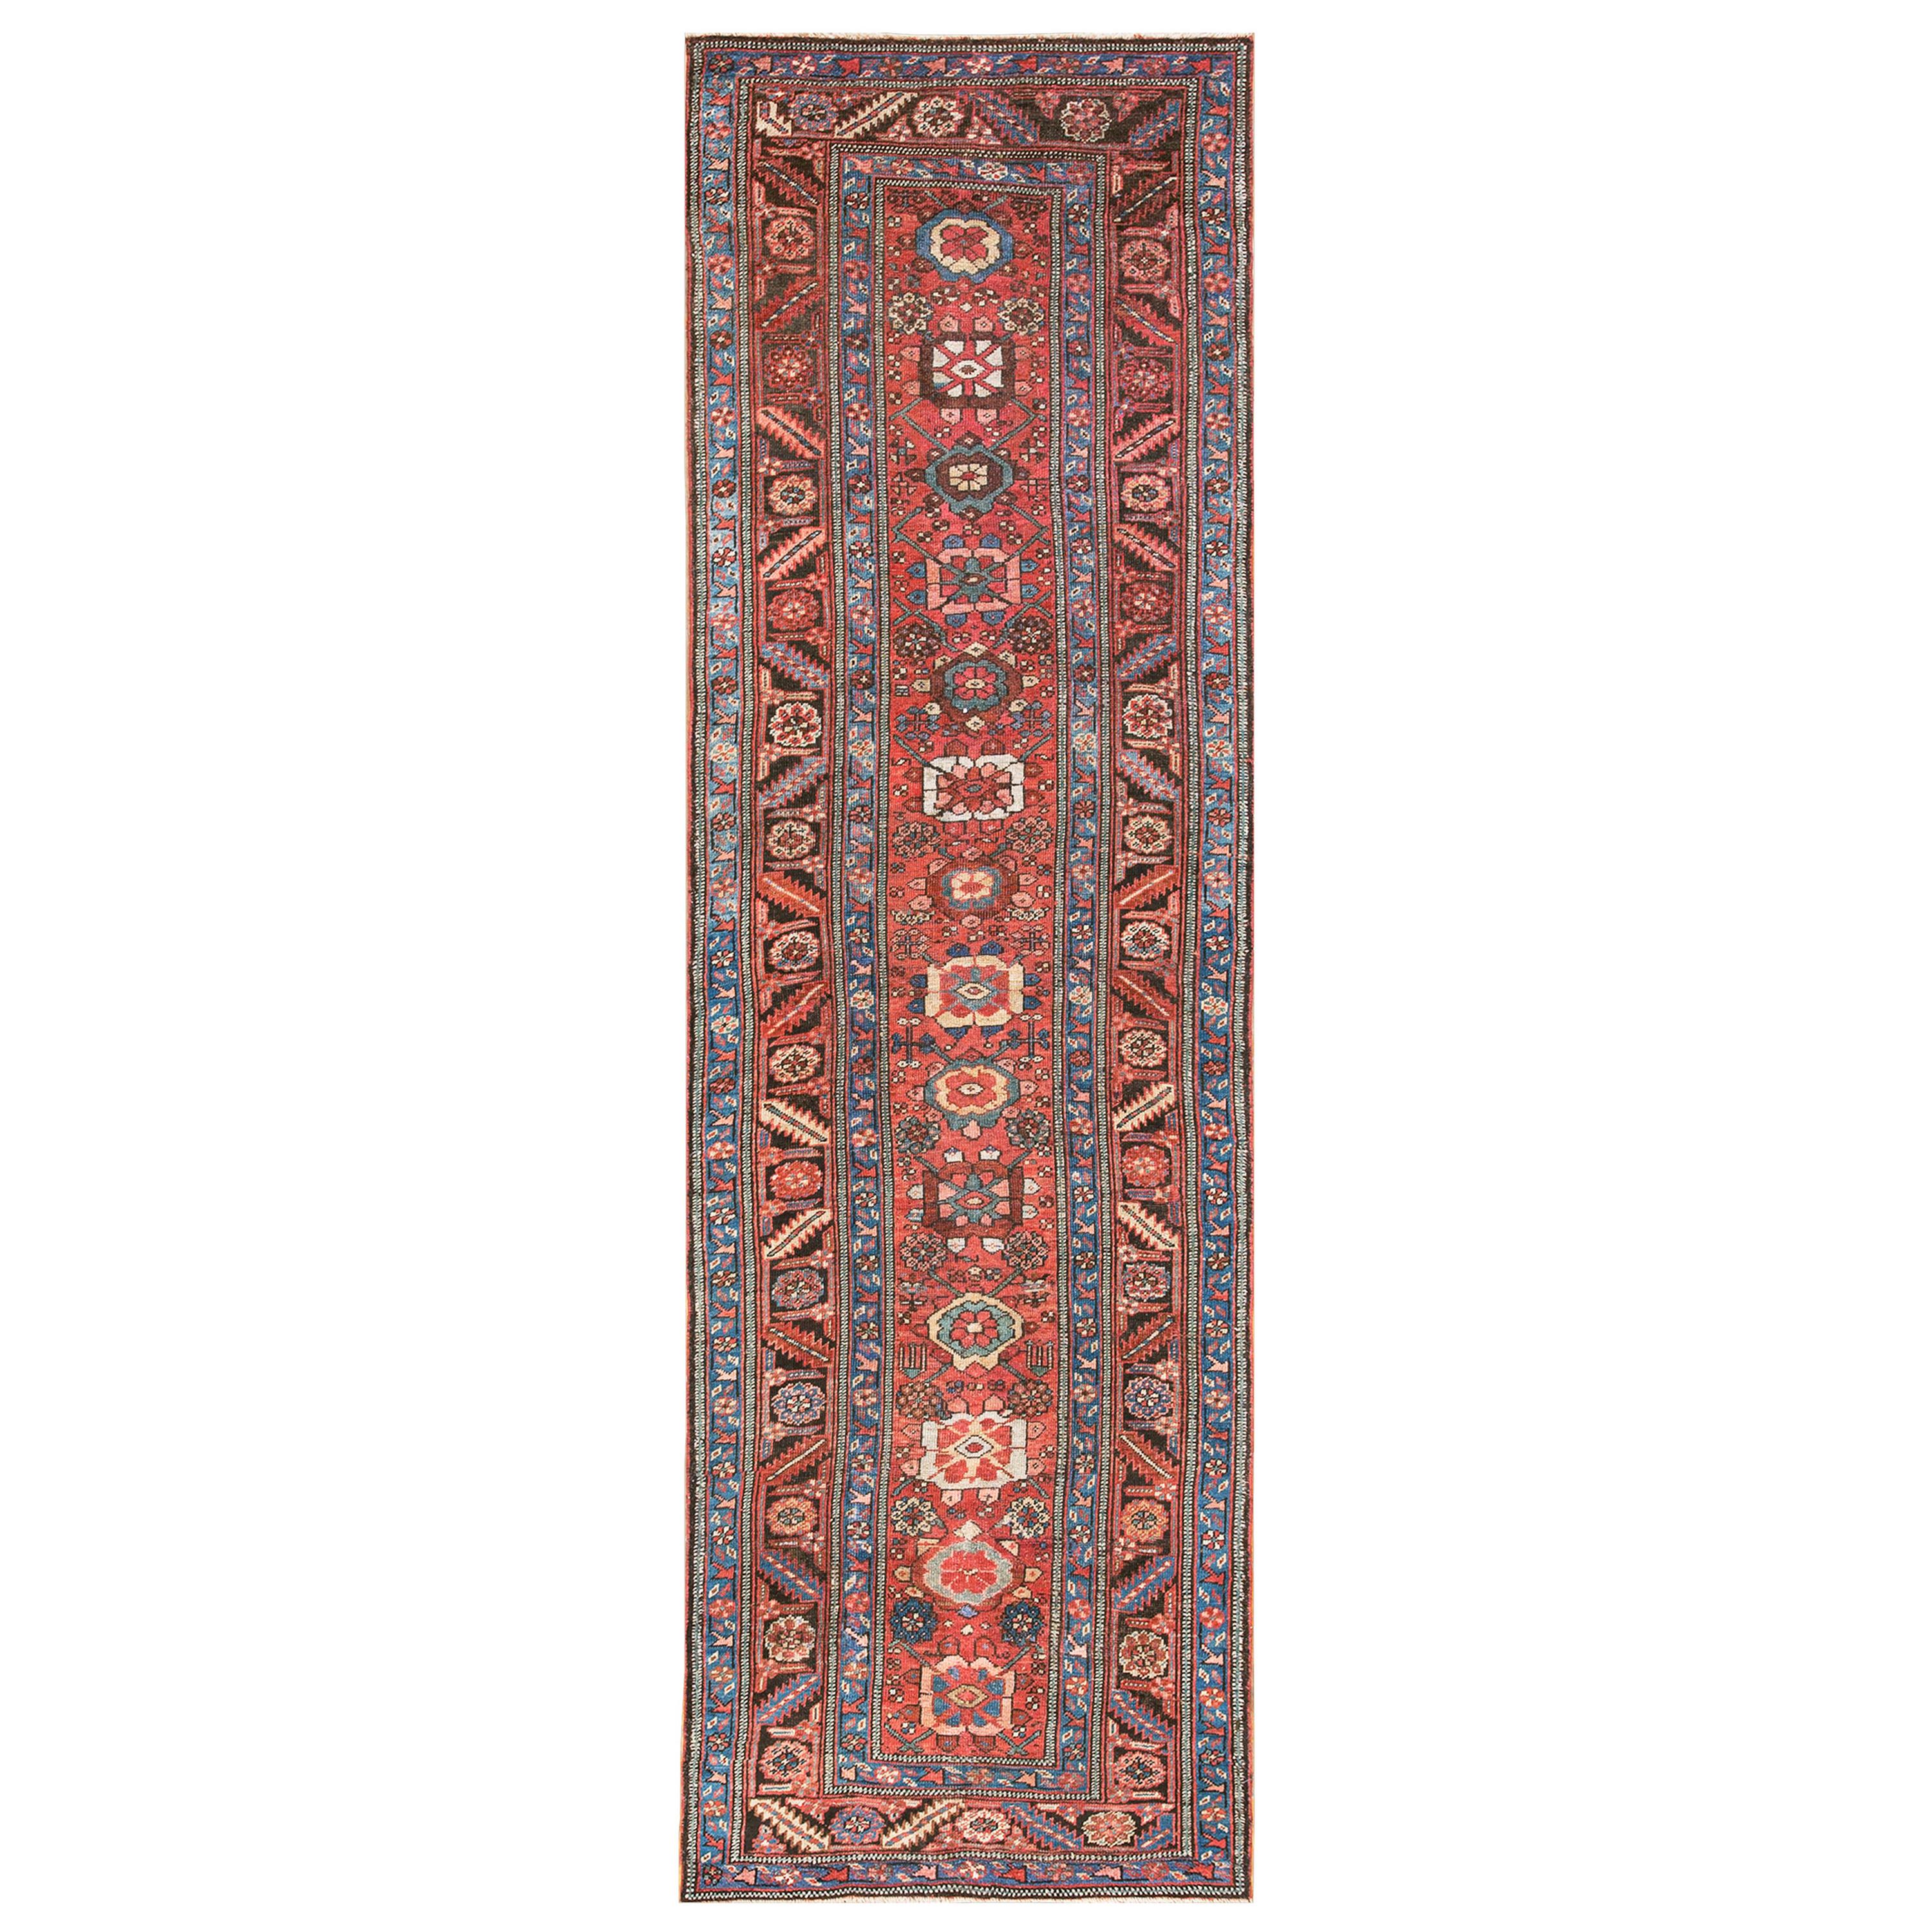 19th Century Persian Bakshaiesh Carpet ( 3' x 10'4" - 90 x 315 )